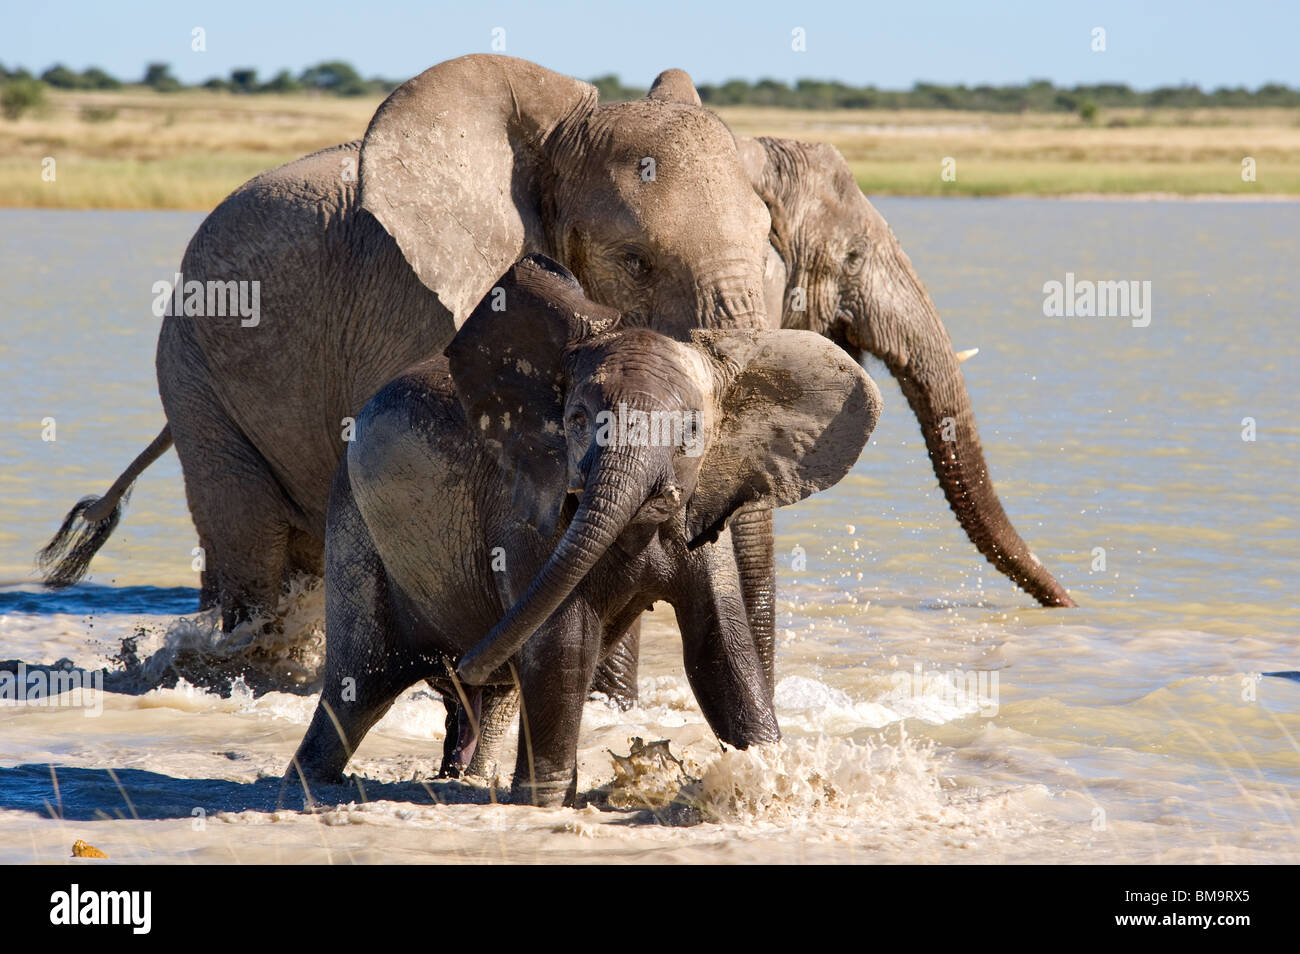 Elephants at play Stock Photo